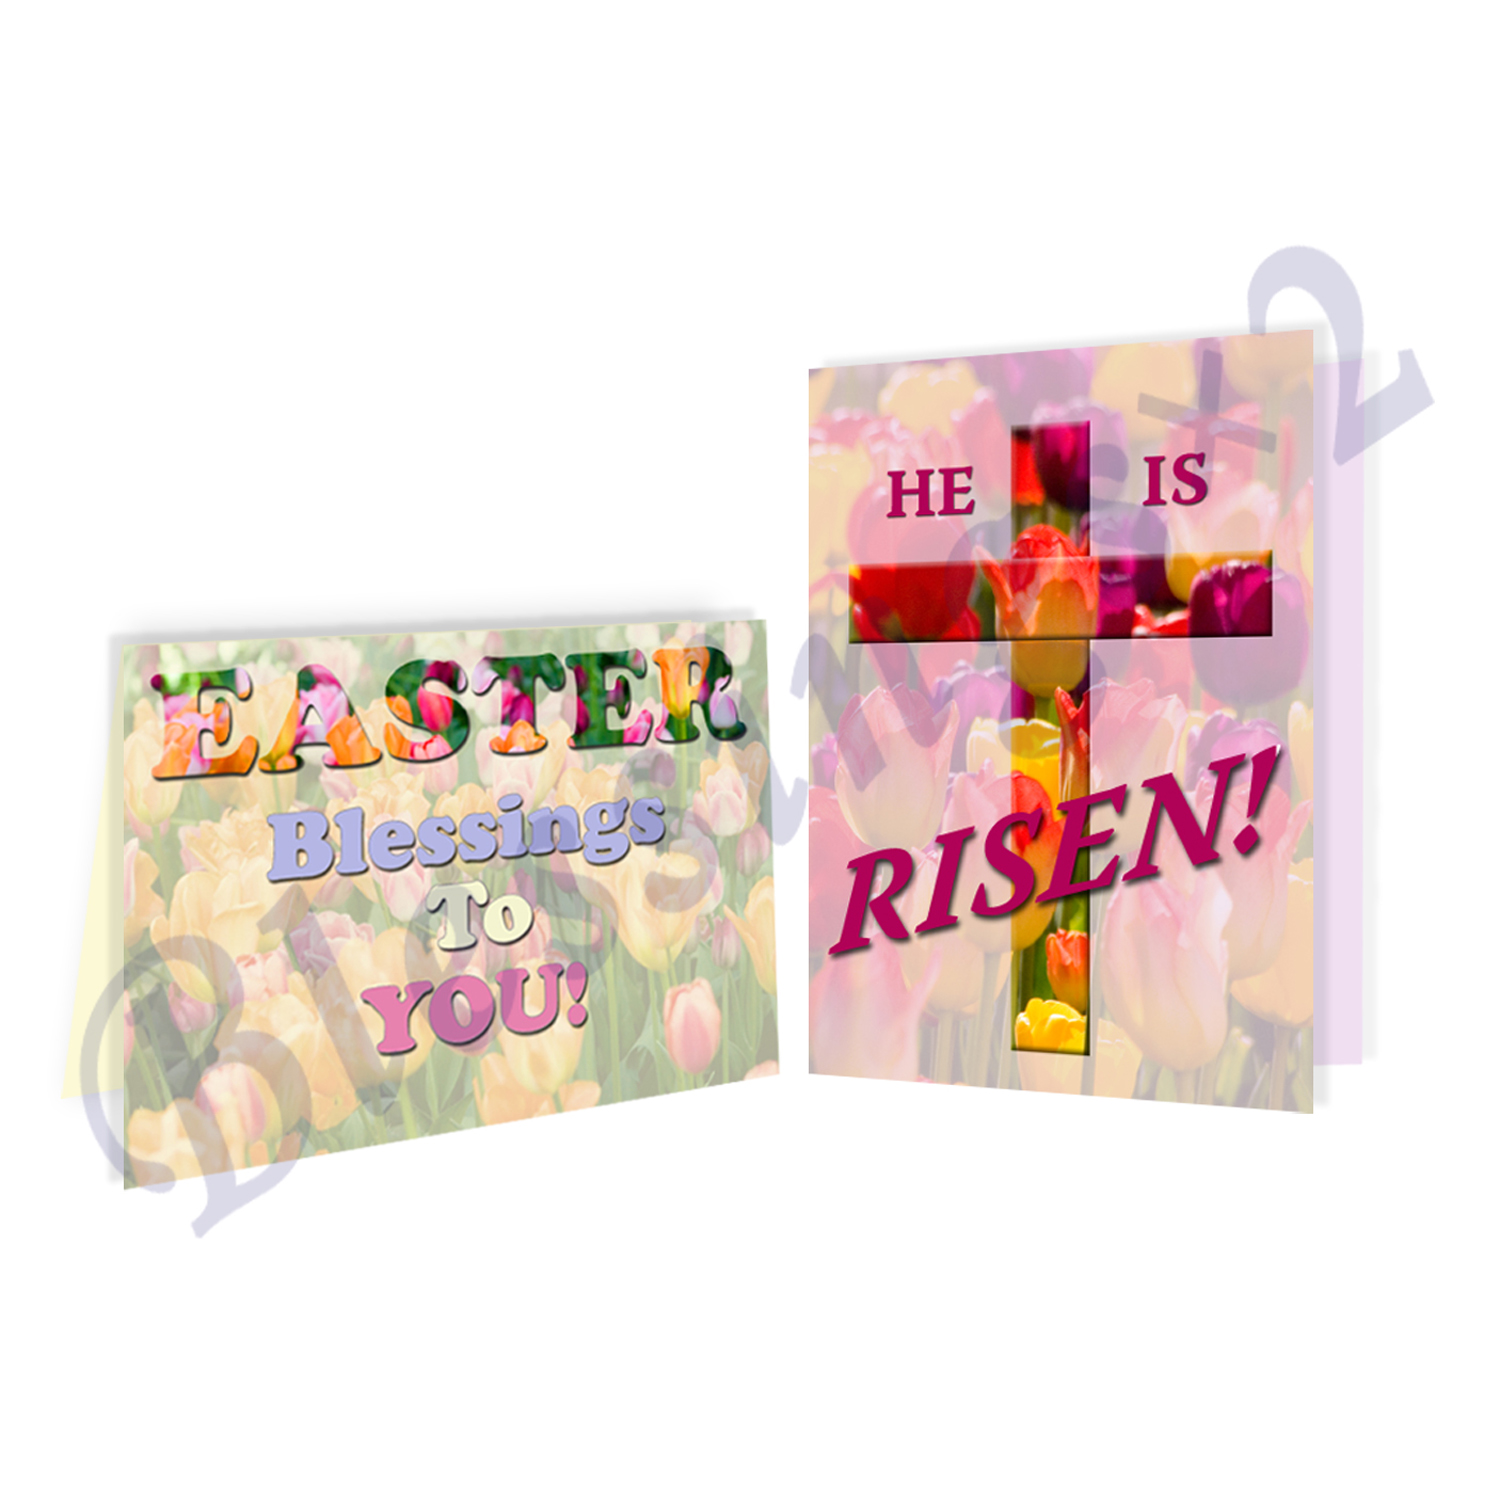 BlessingsX2 Easter Floral Cards